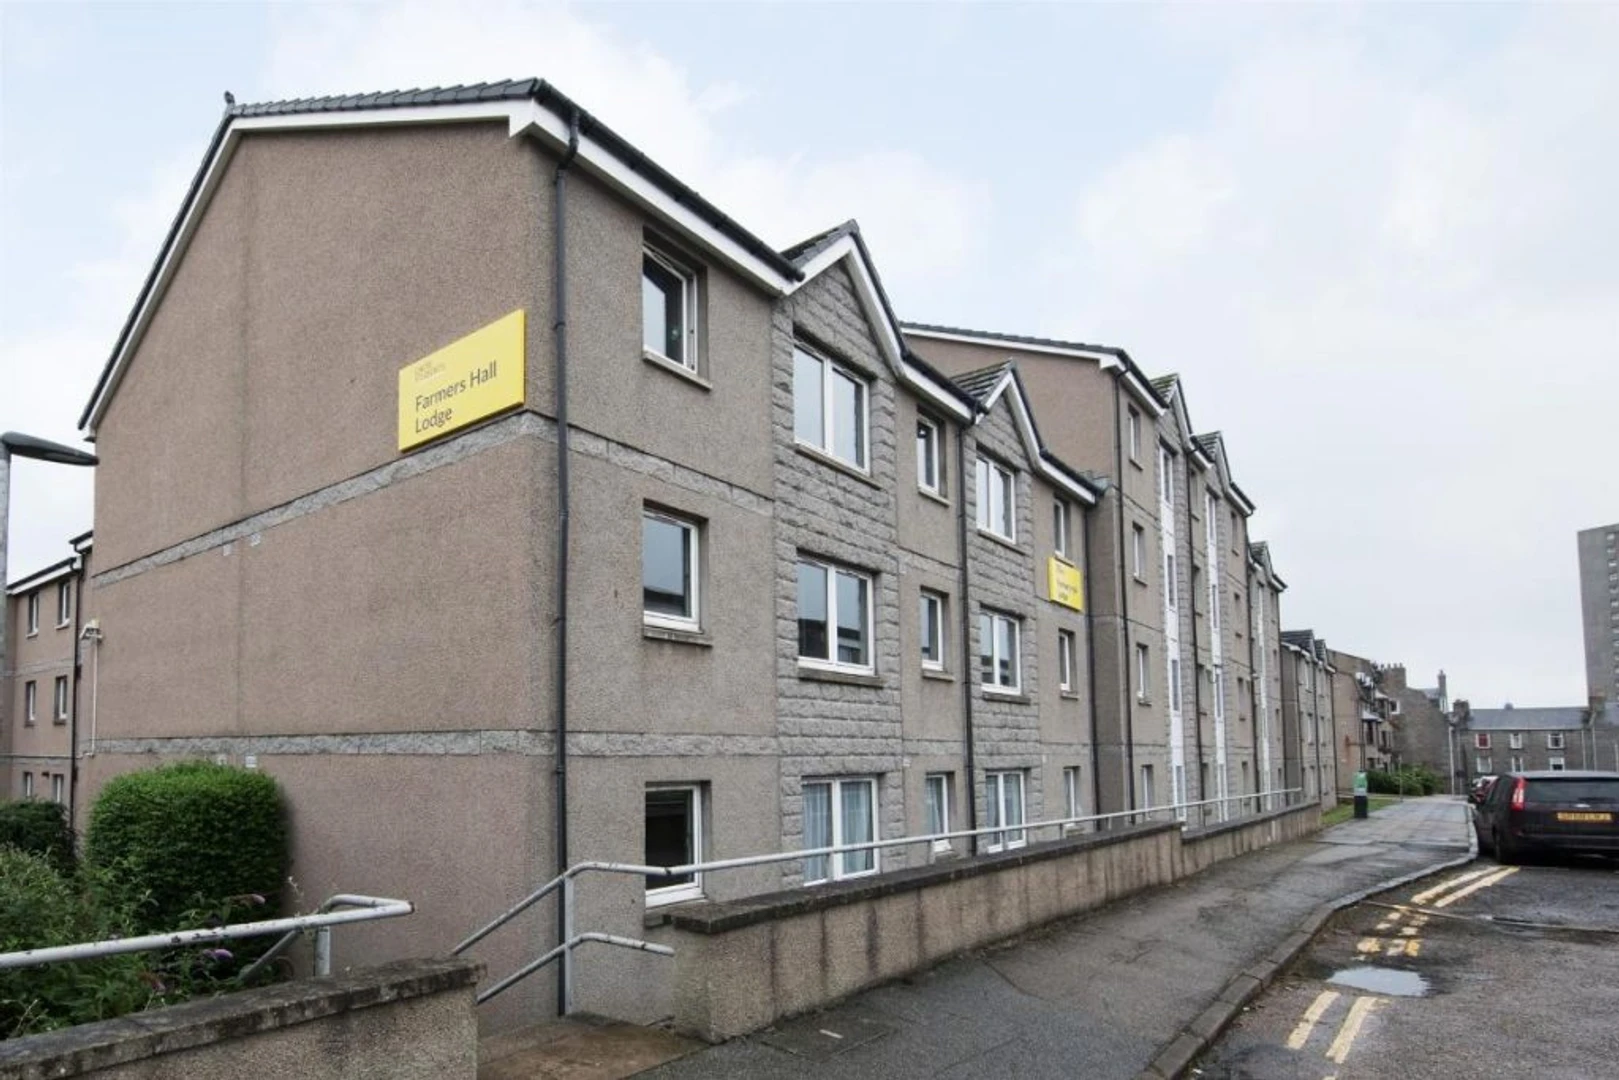 Alquiler de habitaciones por meses en Aberdeen